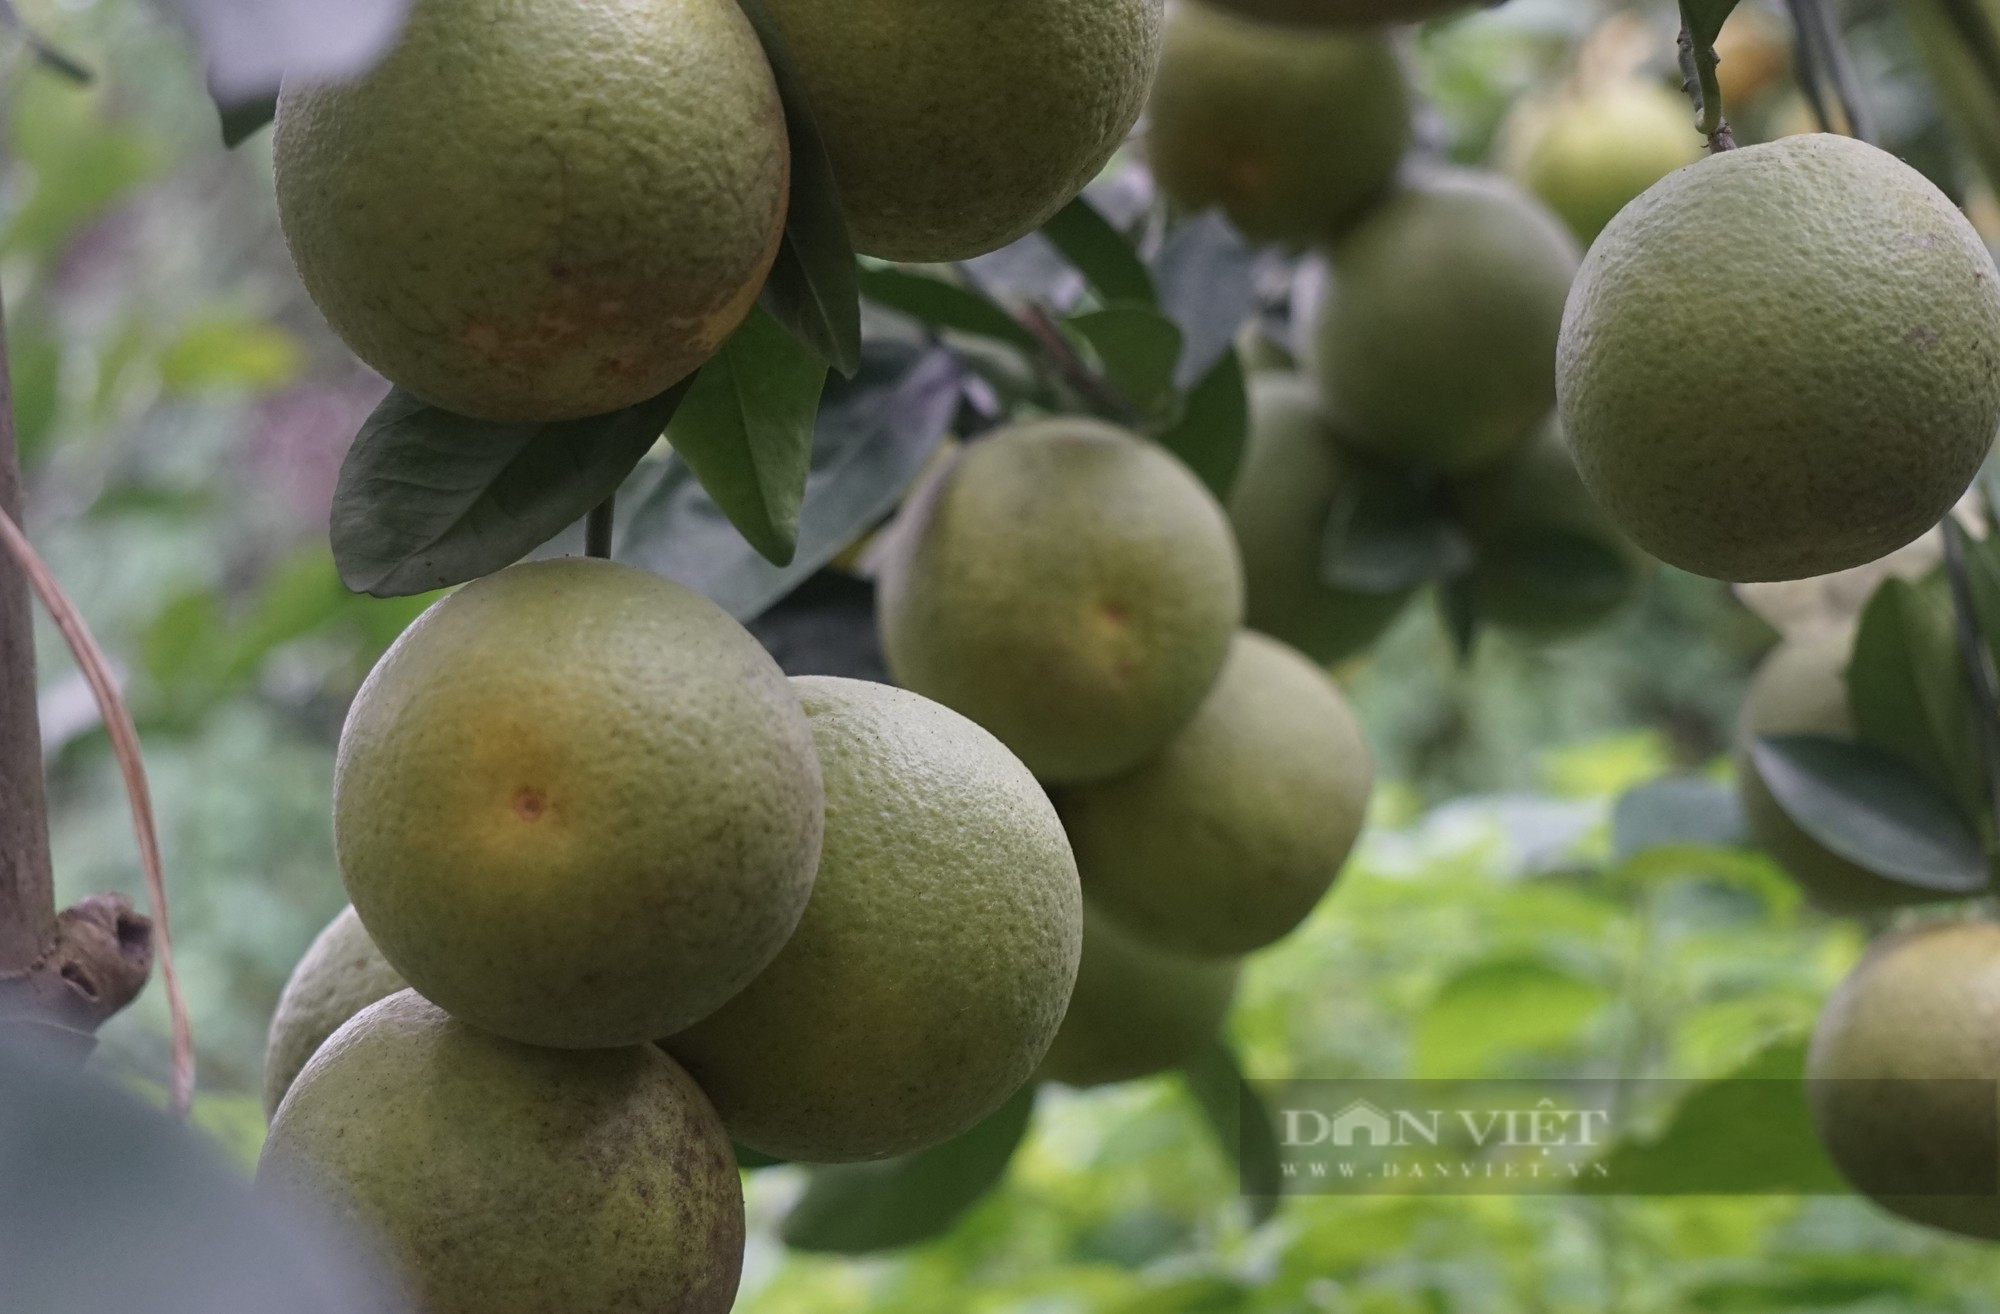 Loại cam đặc sản nức tiếng ở Nghệ An mỗi quả giá 80.000 đồng đang treo trên cây khách đã đến đặt mua - Ảnh 3.